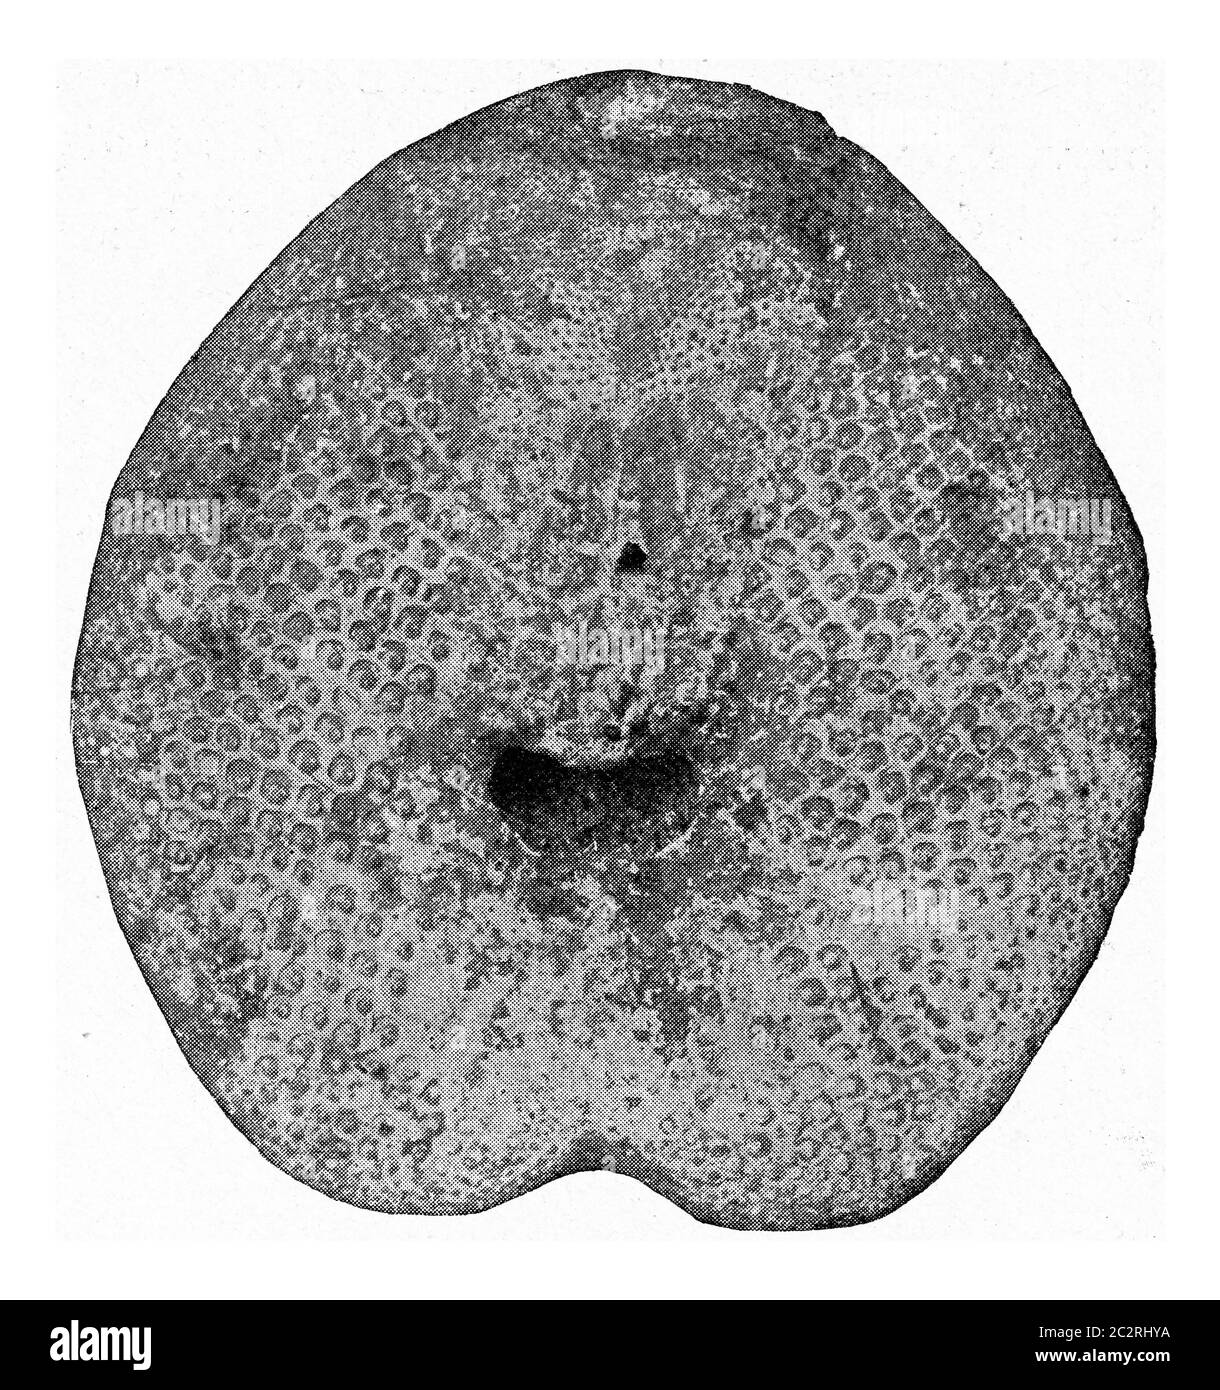 Spatangus, fossiler Seeigel aus dem Tertiär Nordwestdeutschlands, vintage gravierte Illustration. Aus dem Universum und der Menschheit, 1910. Stockfoto